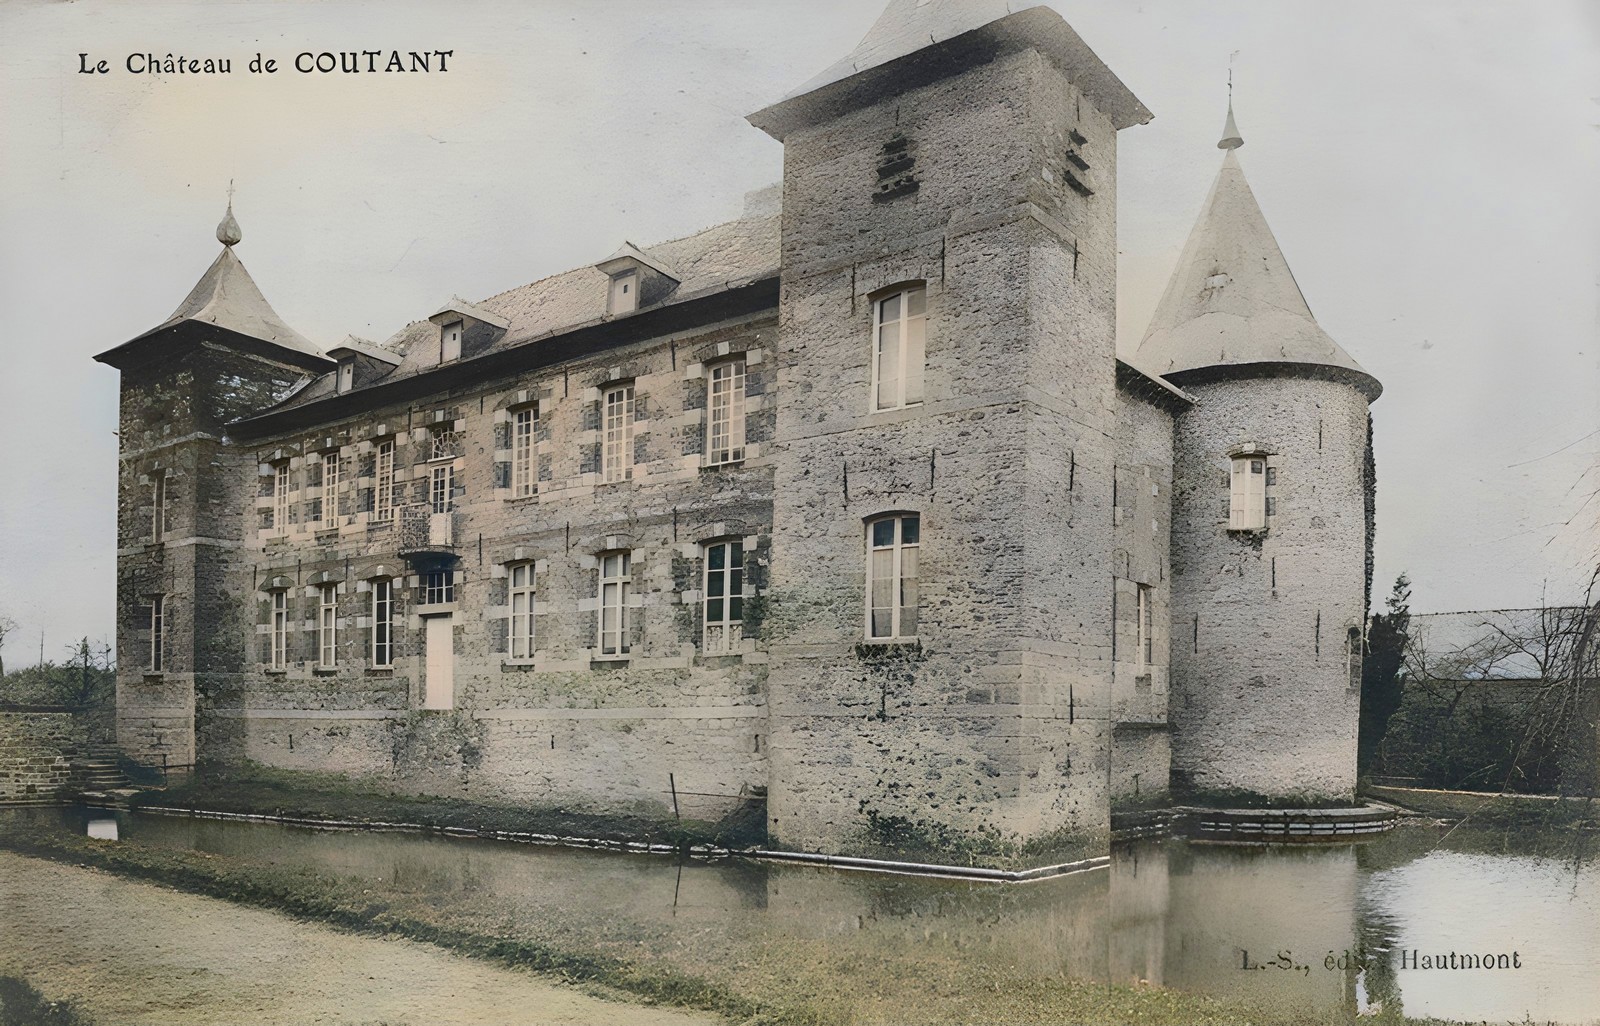 Le Château de Coutant à Saint Hilaire sur Helpe.